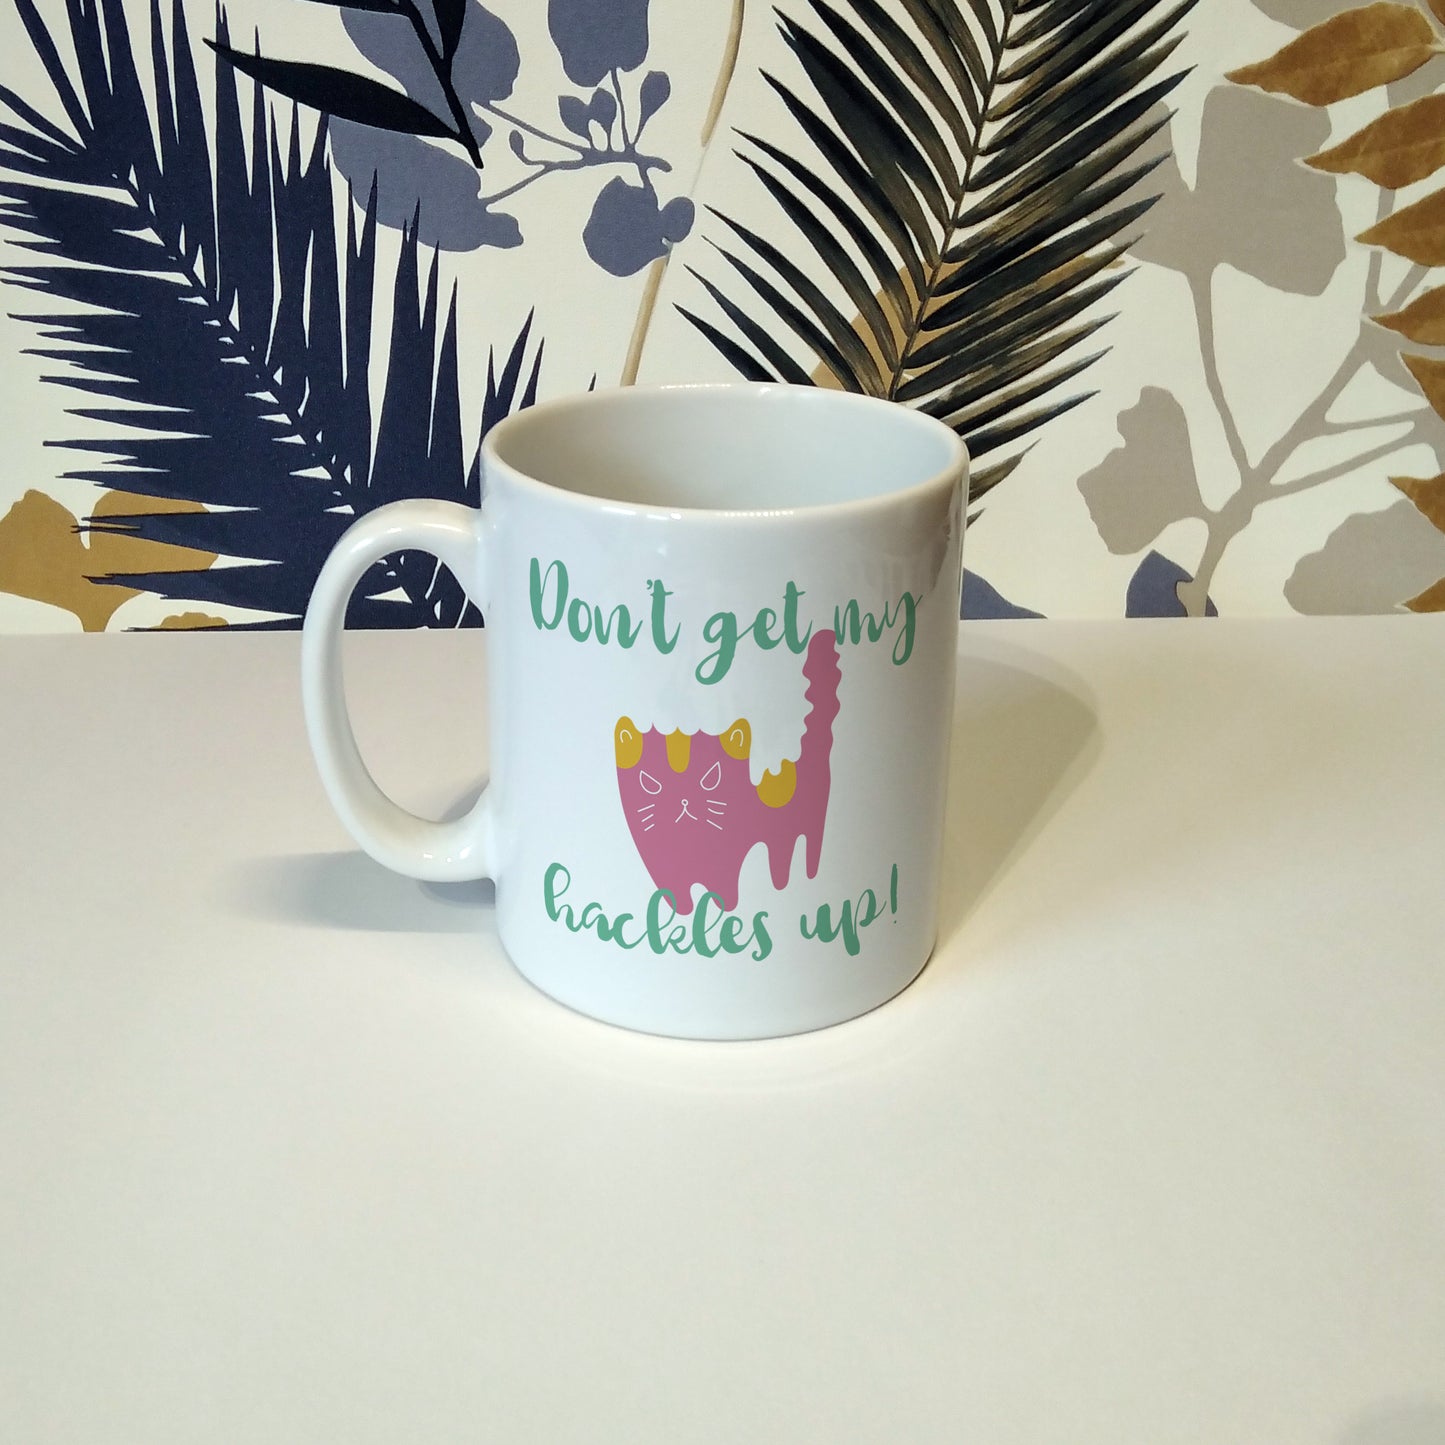 Don't get my hackles up | Ceramic mug